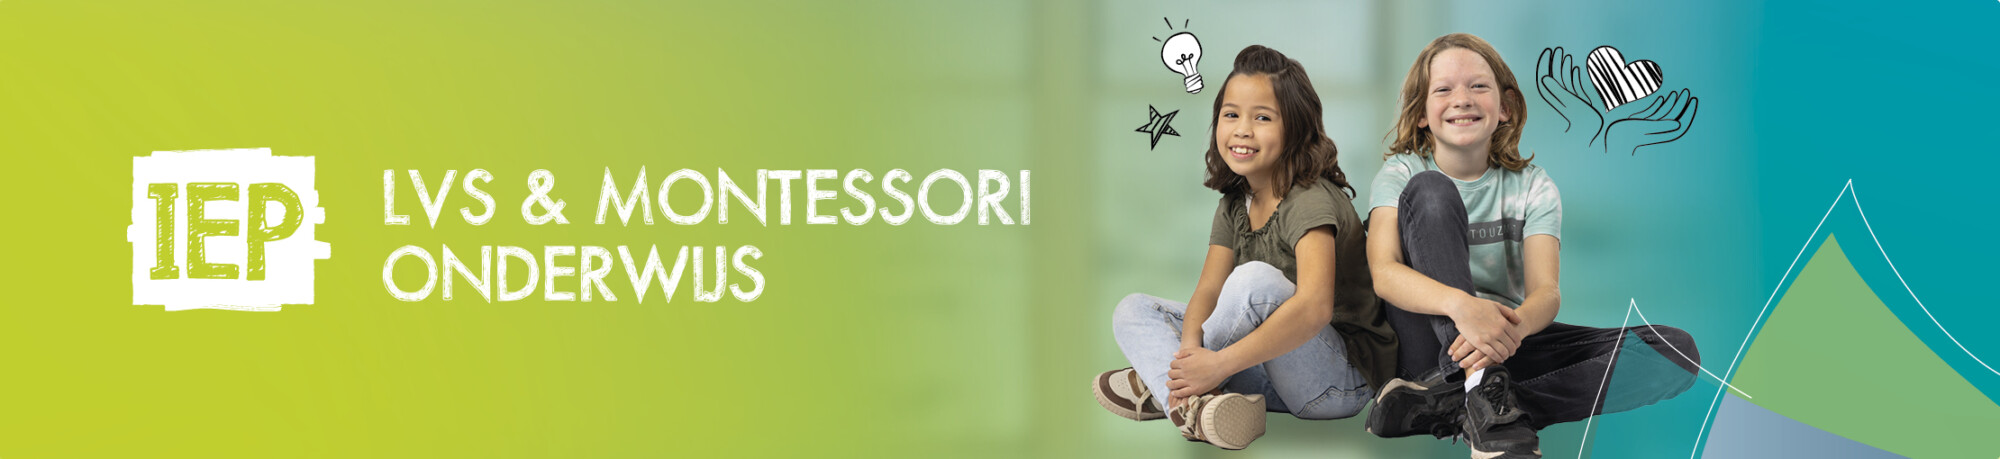 Referentie artikel Montessori onderwijs – Nicolet Groeneweg